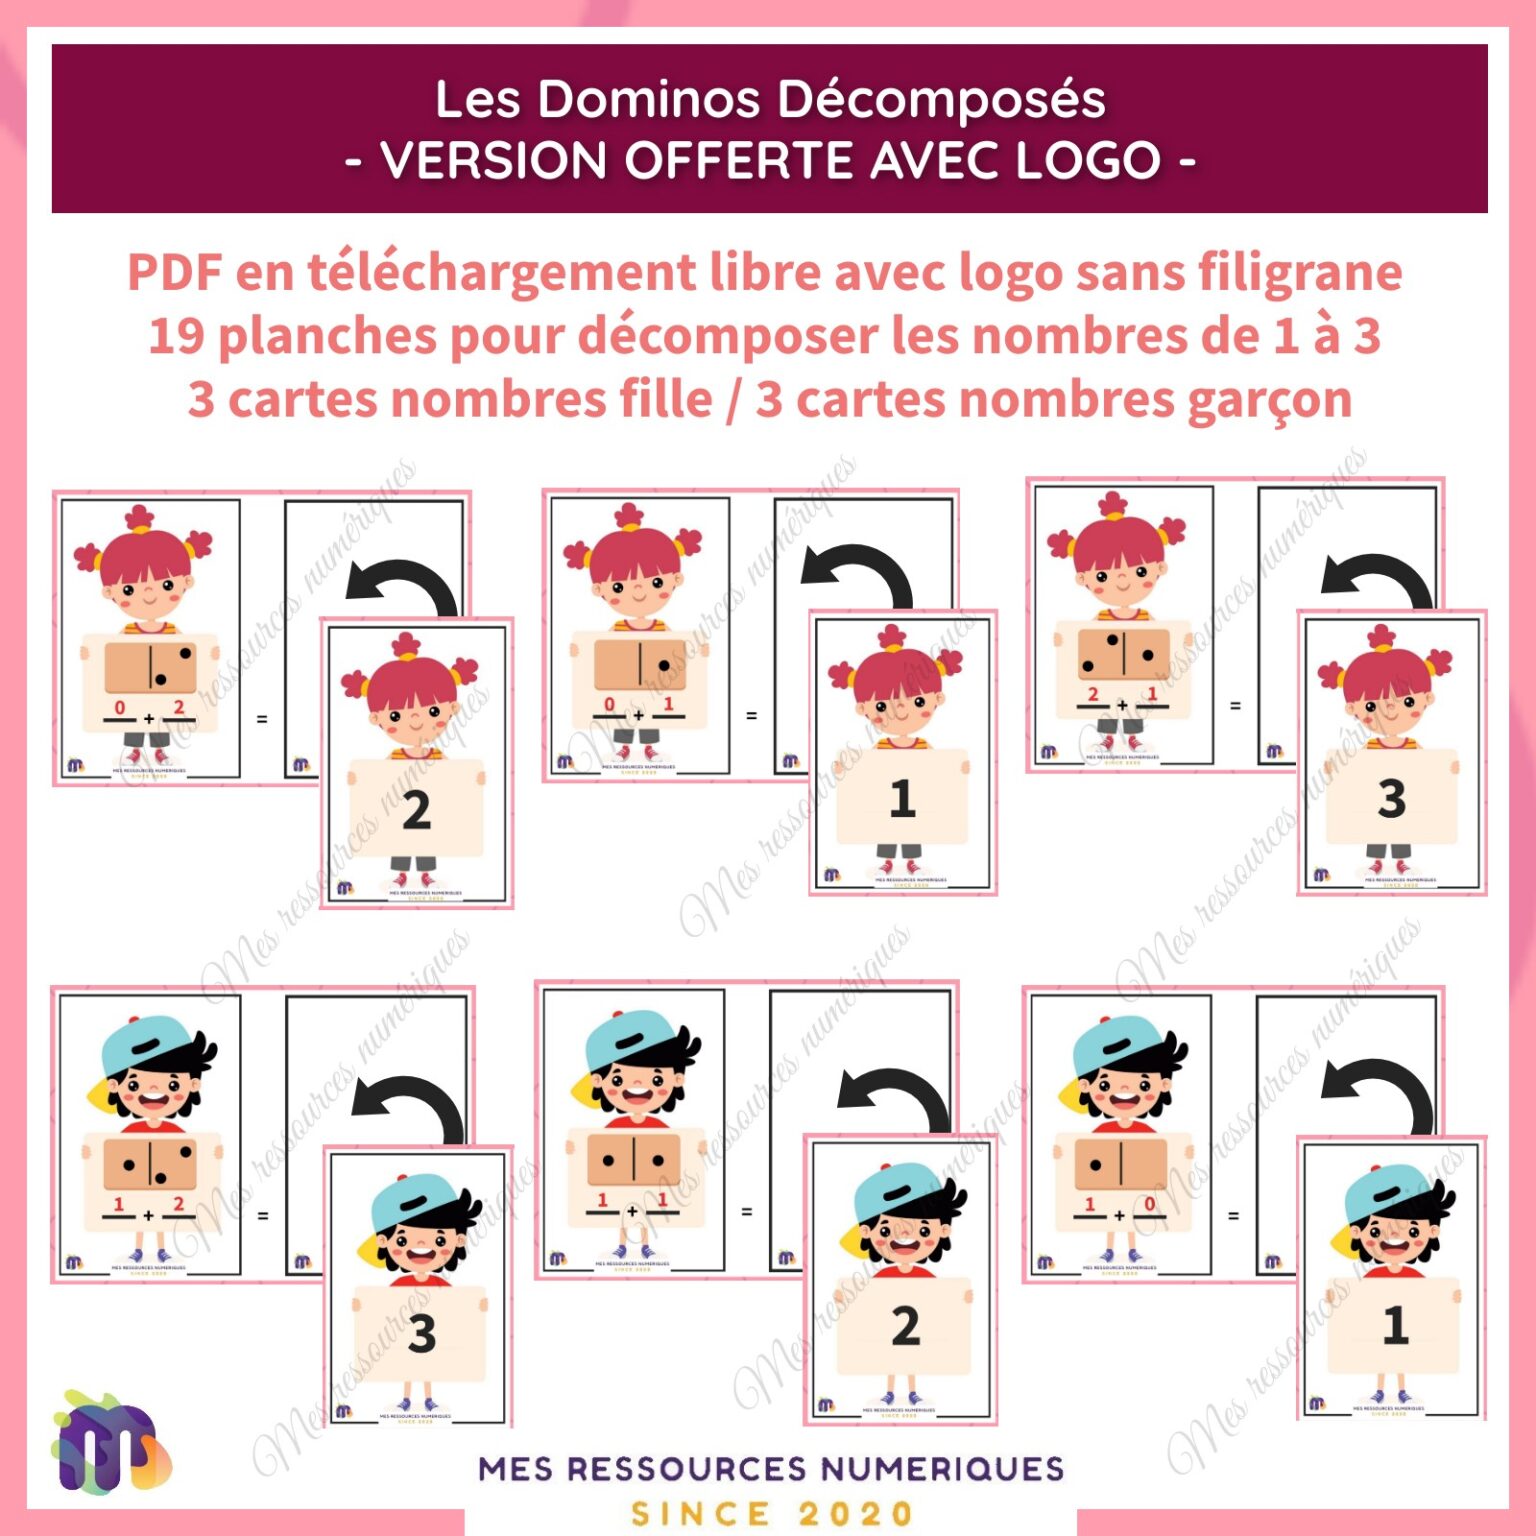 Les Dominos Décomposés - OFFERT AVEC LOGO